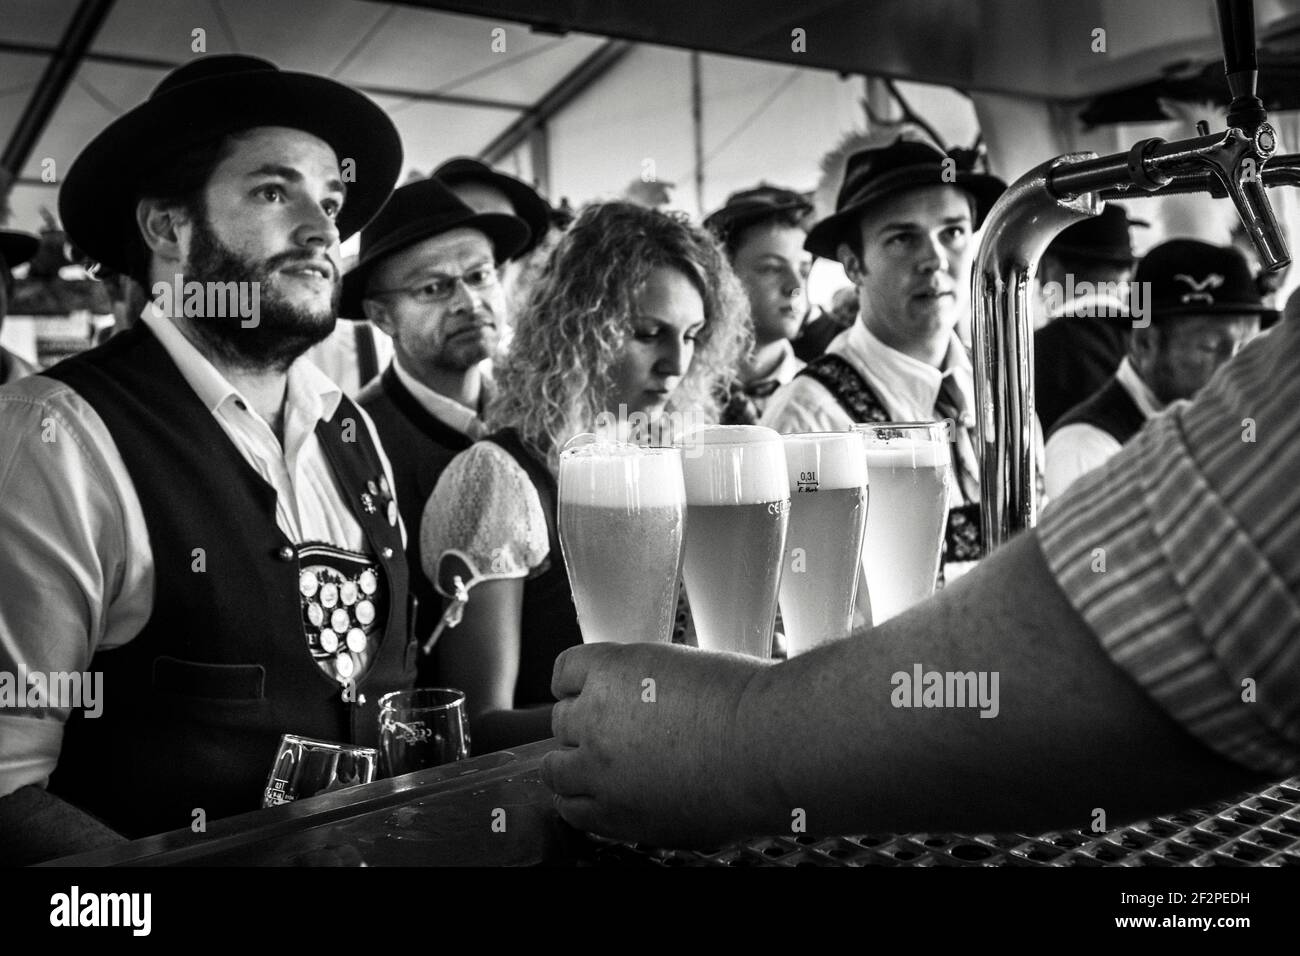 Allemagne, Bavière, Antdorf, semaine de fête de l'association traditionnelle de costumes. Les visiteurs du chapiteau attendent leur bière. Banque D'Images